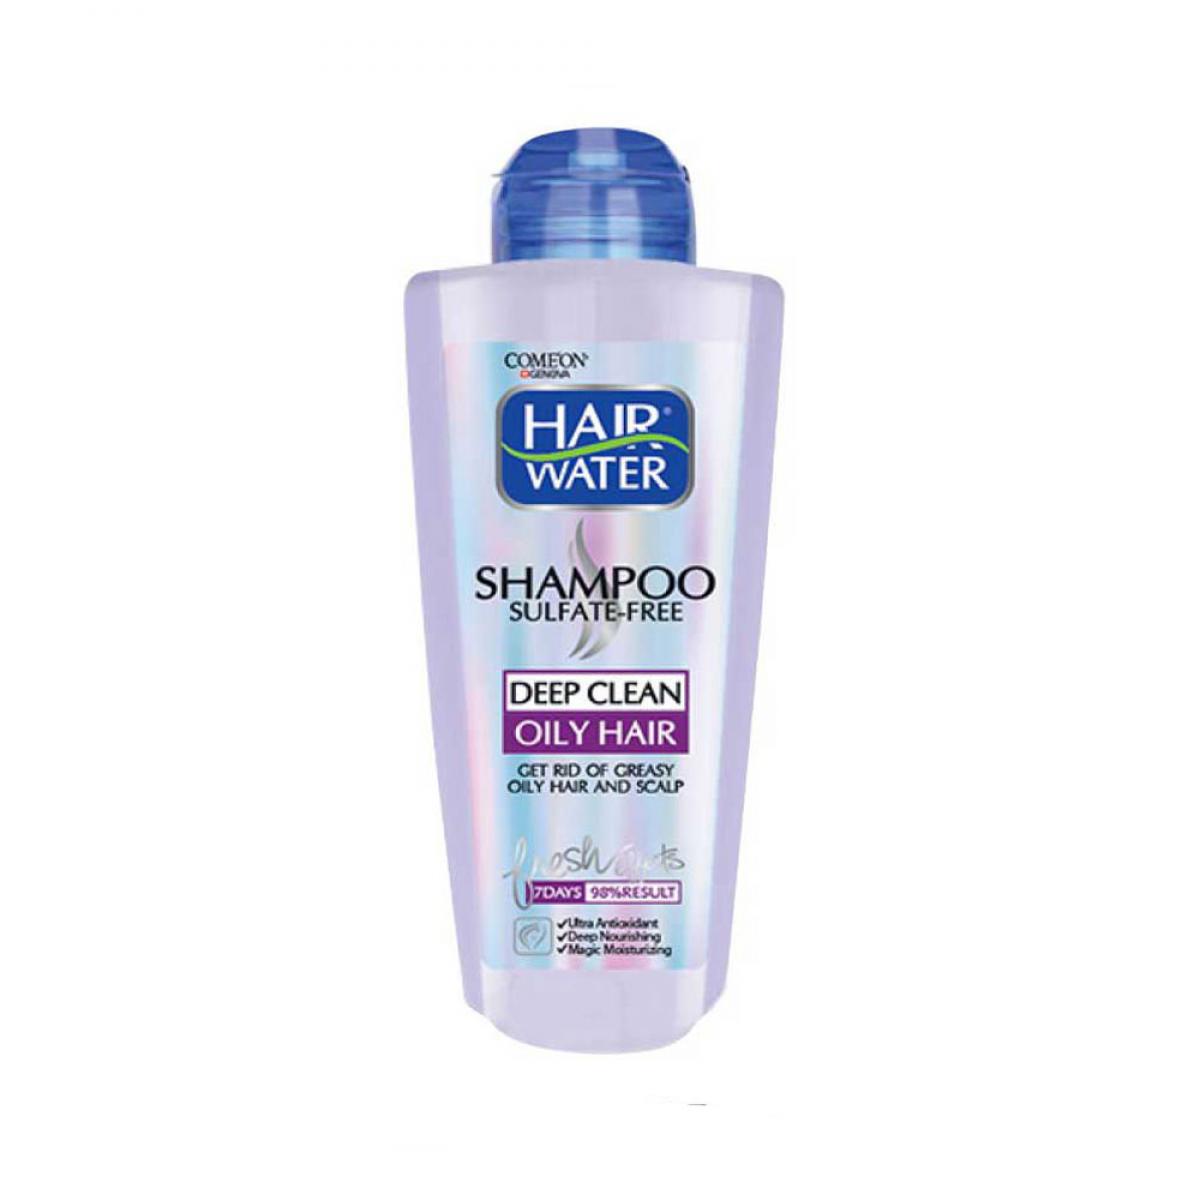 شامپو مدل Hair Water مناسب موهای چرب حجم 400 میل - Comeon Hair Water Shampoo For Oily Hair 400ml